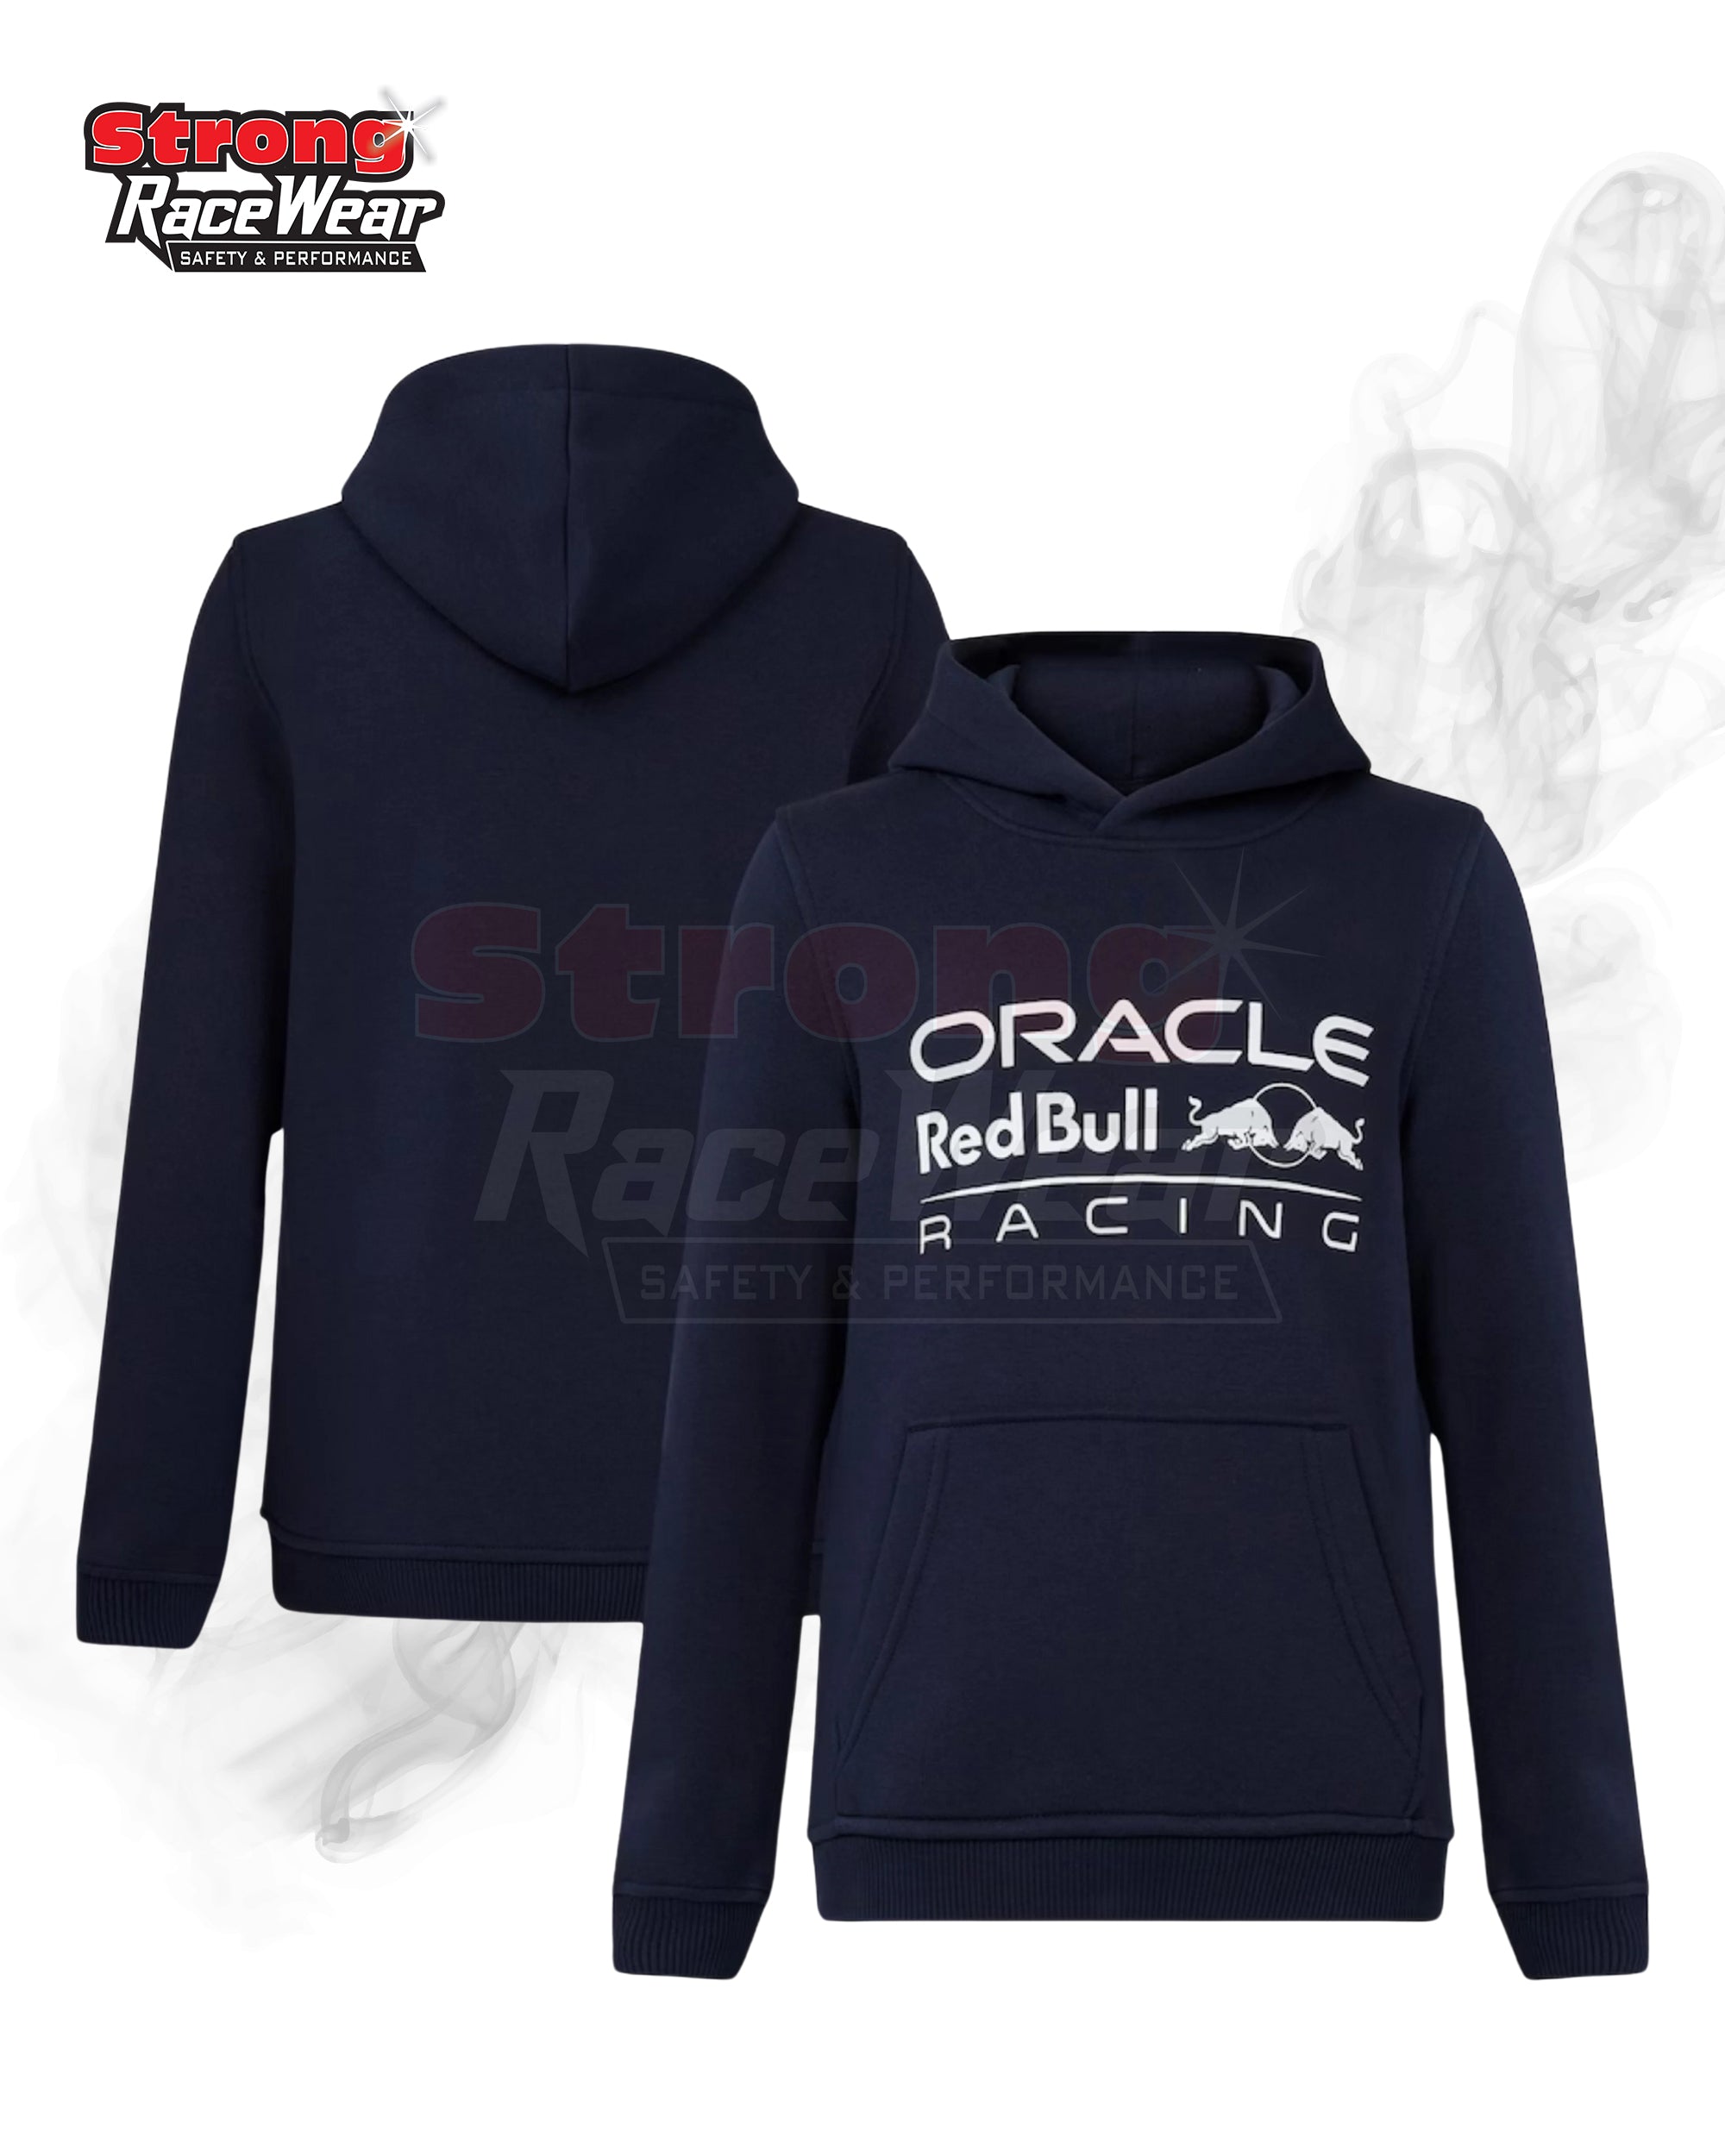 Oracle Red Bull Racing Logo Hoodies